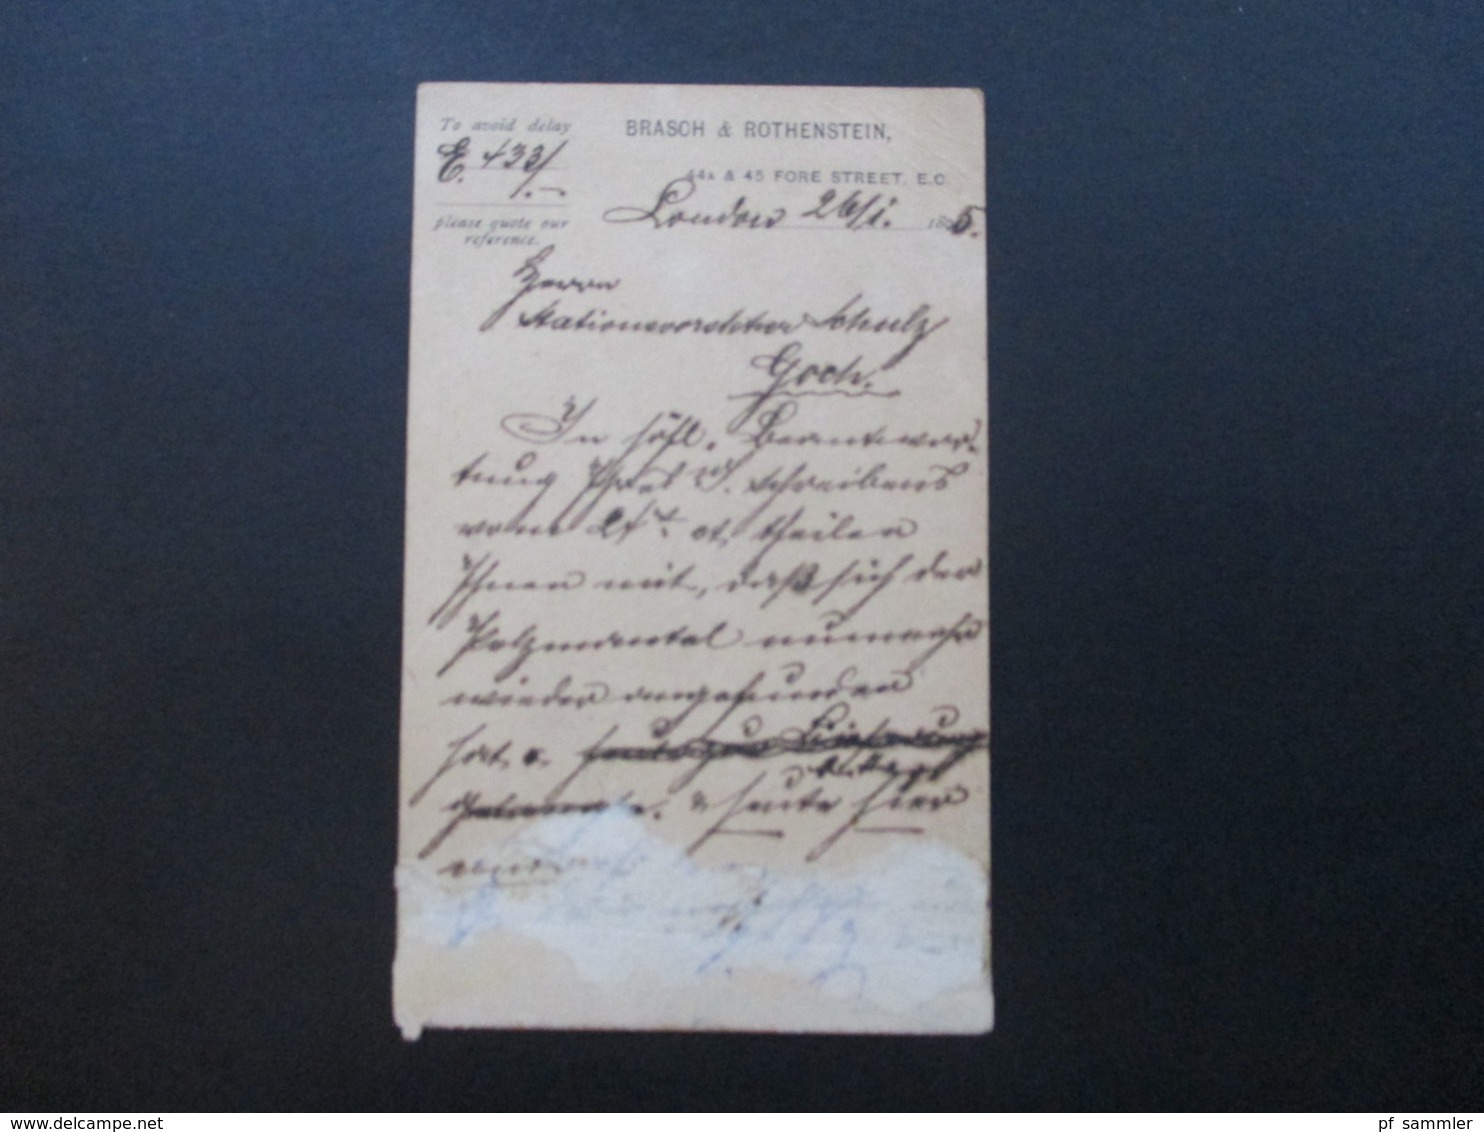 GB 1895 Ganzsache Mit Zusatzfrankatur Nr. 86 Stempel London E.C. Nach Goch Gesendet! Brasch & Rothenstein London - Lettres & Documents